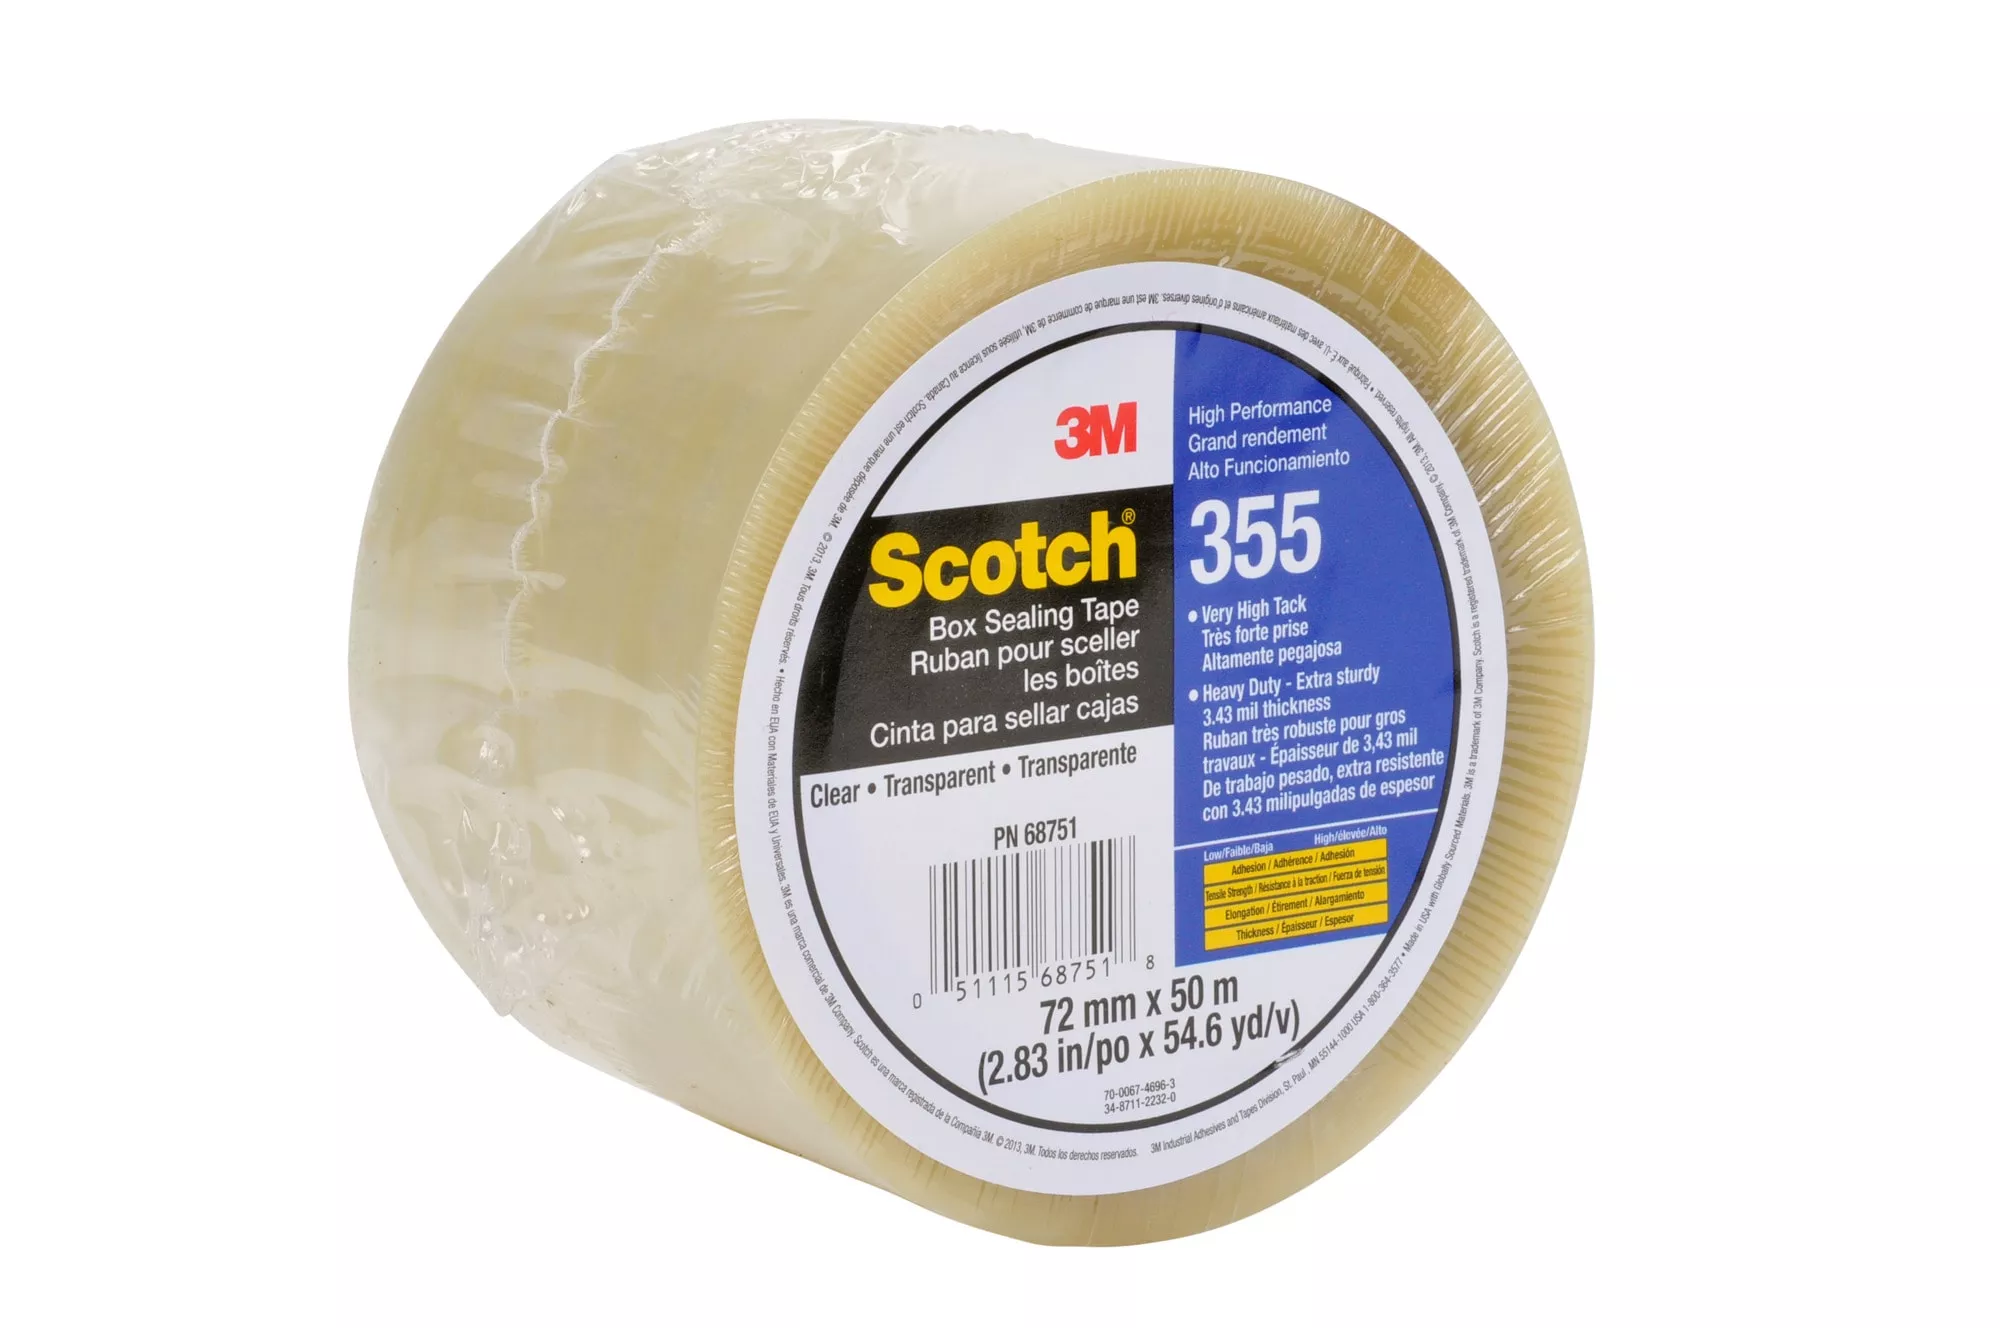 SKU 7010374956 | Scotch® Box Sealing Tape 355